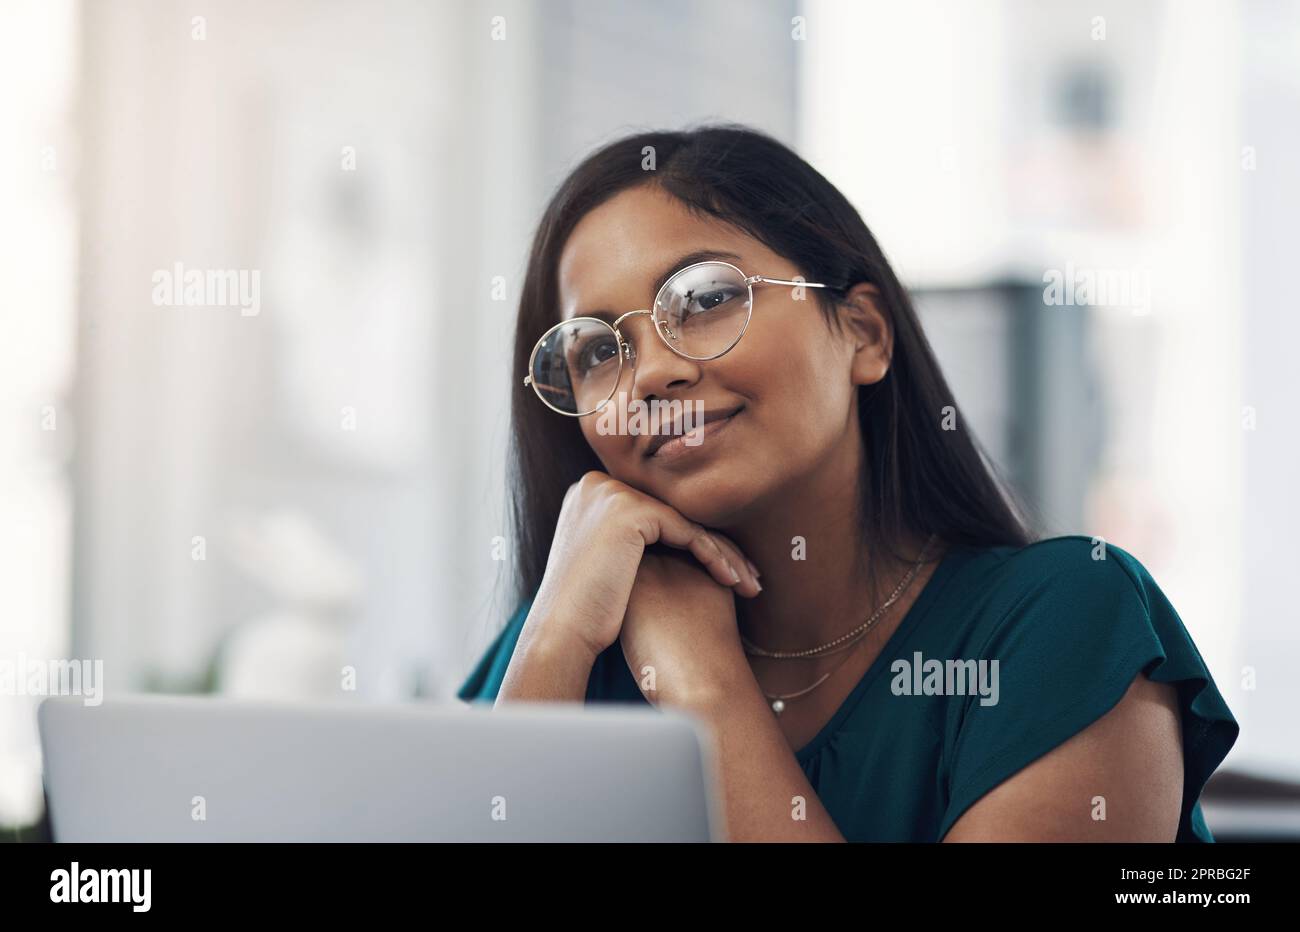 So viele klugen Ideen kommen ihr in den Sinn. Eine junge Geschäftsfrau, die nachdenklich aussieht, während sie in einem Büro an einem Laptop arbeitet. Stockfoto